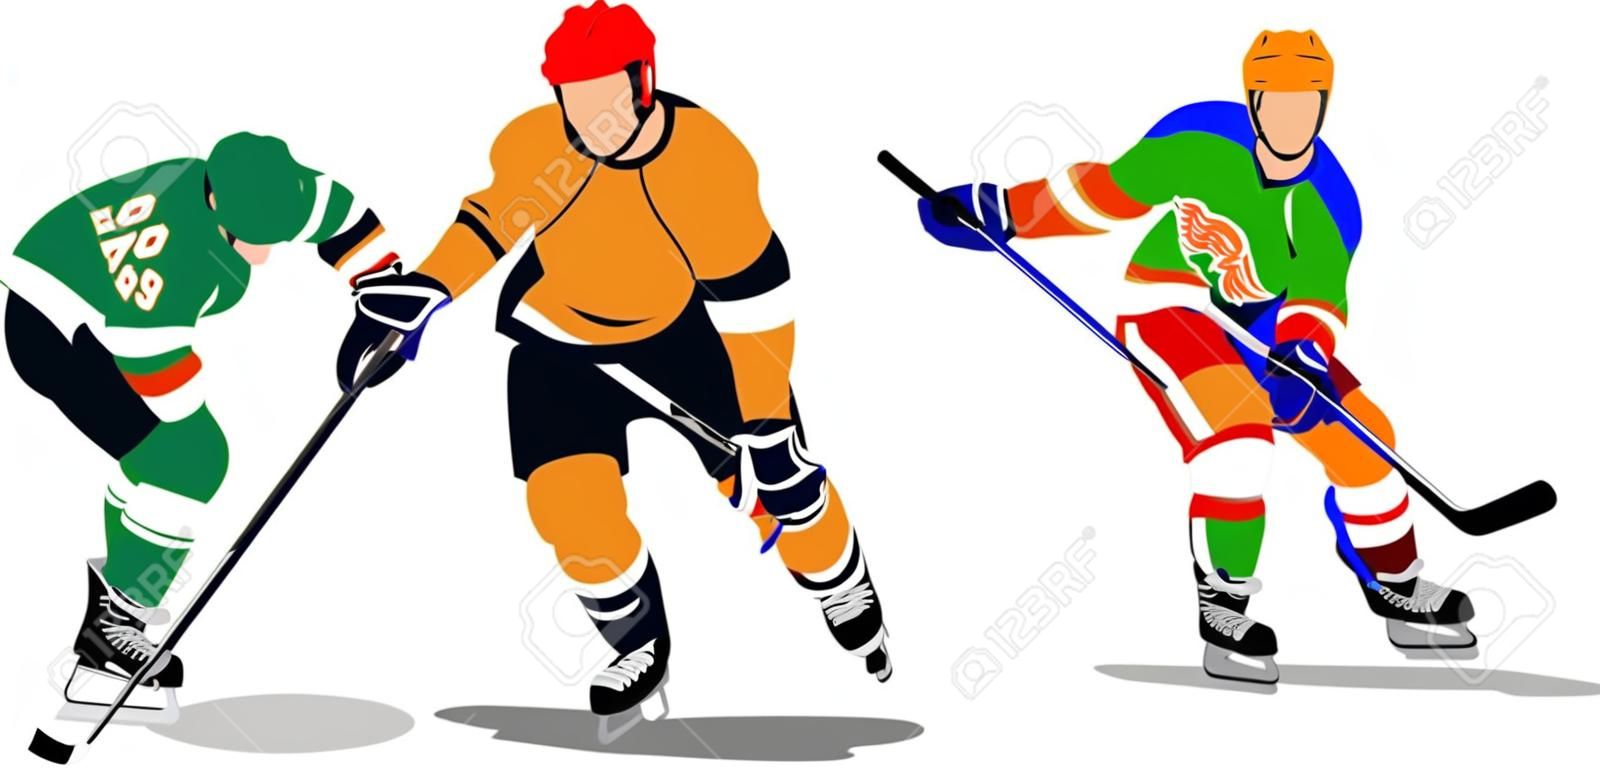 Buz hokeyi oyuncusu. tasarımcılar için renkli Vector illustration